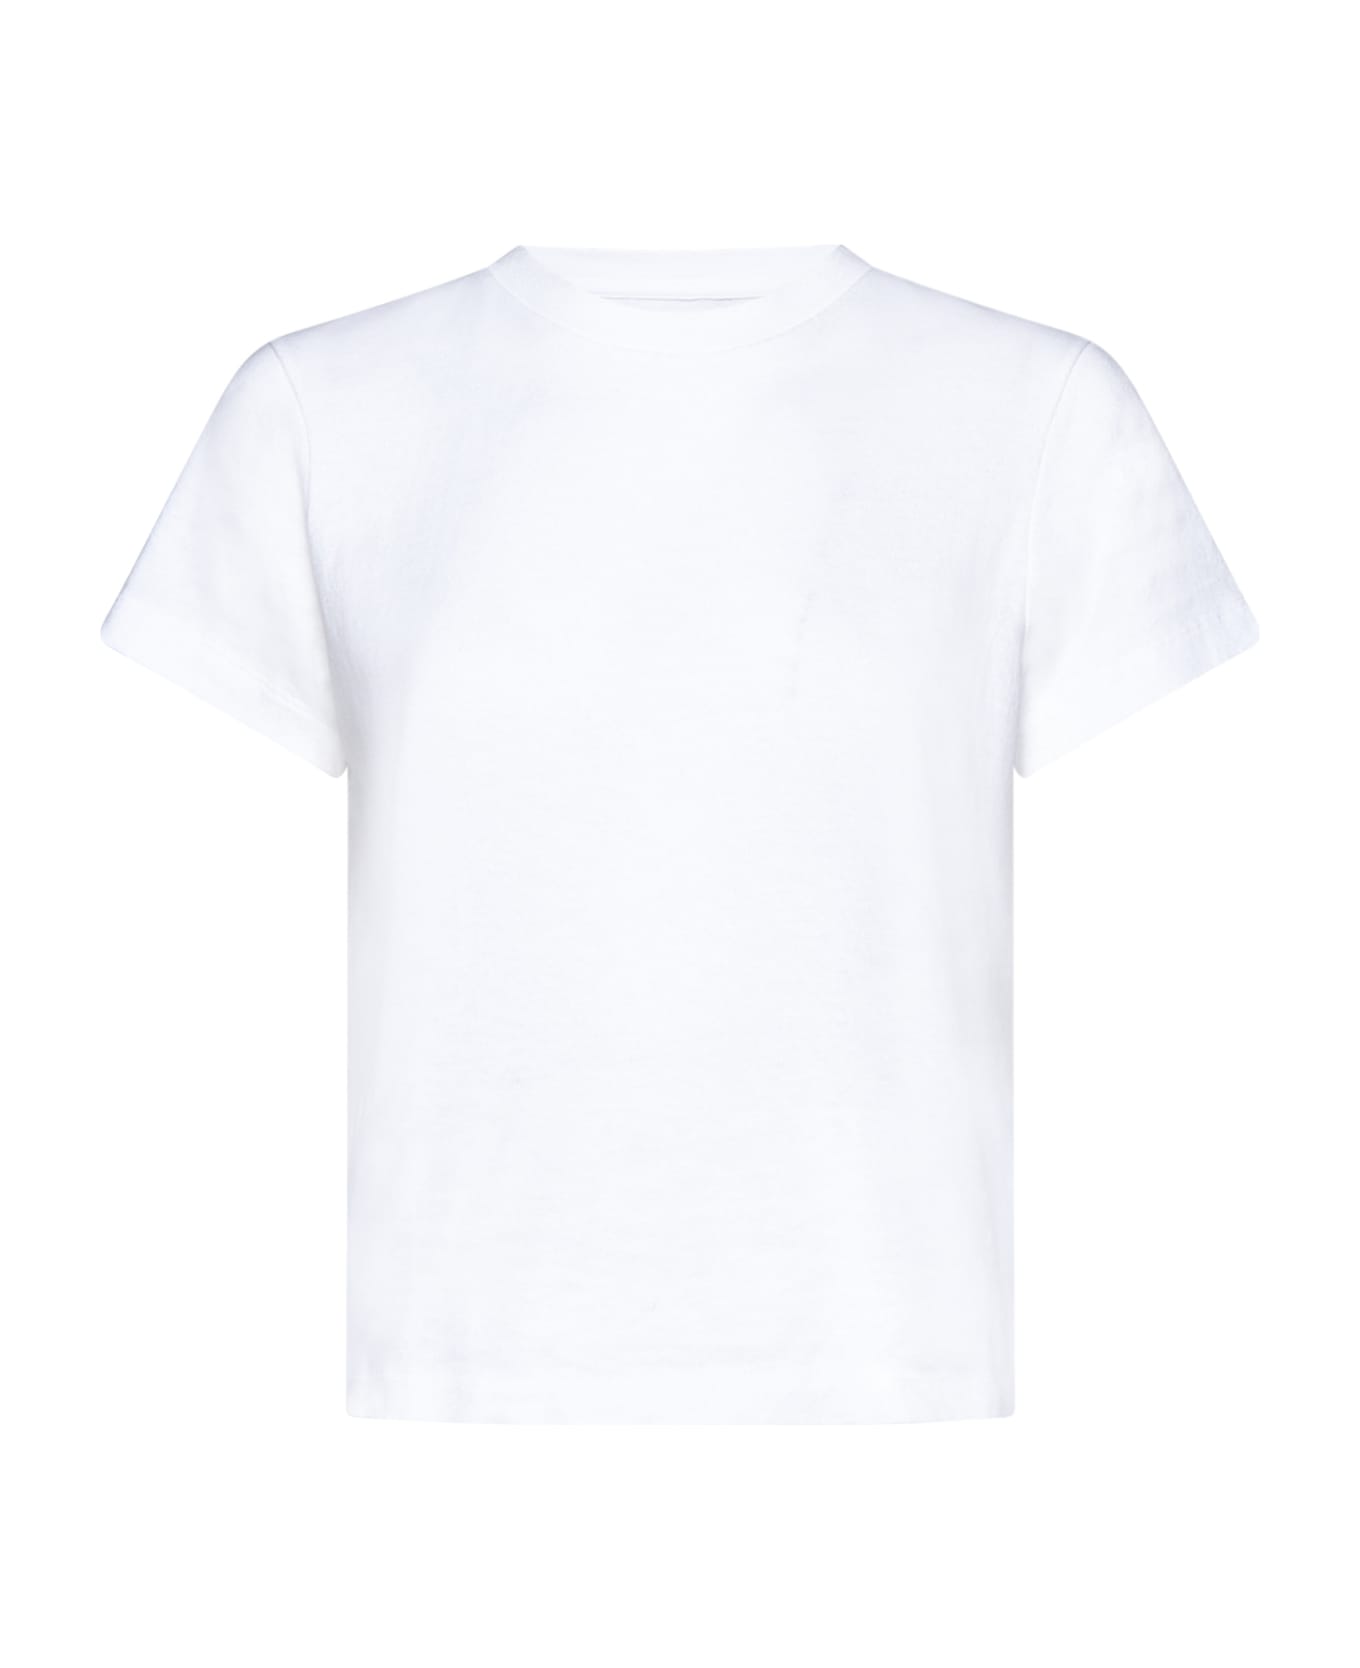 Khaite T-Shirt - White